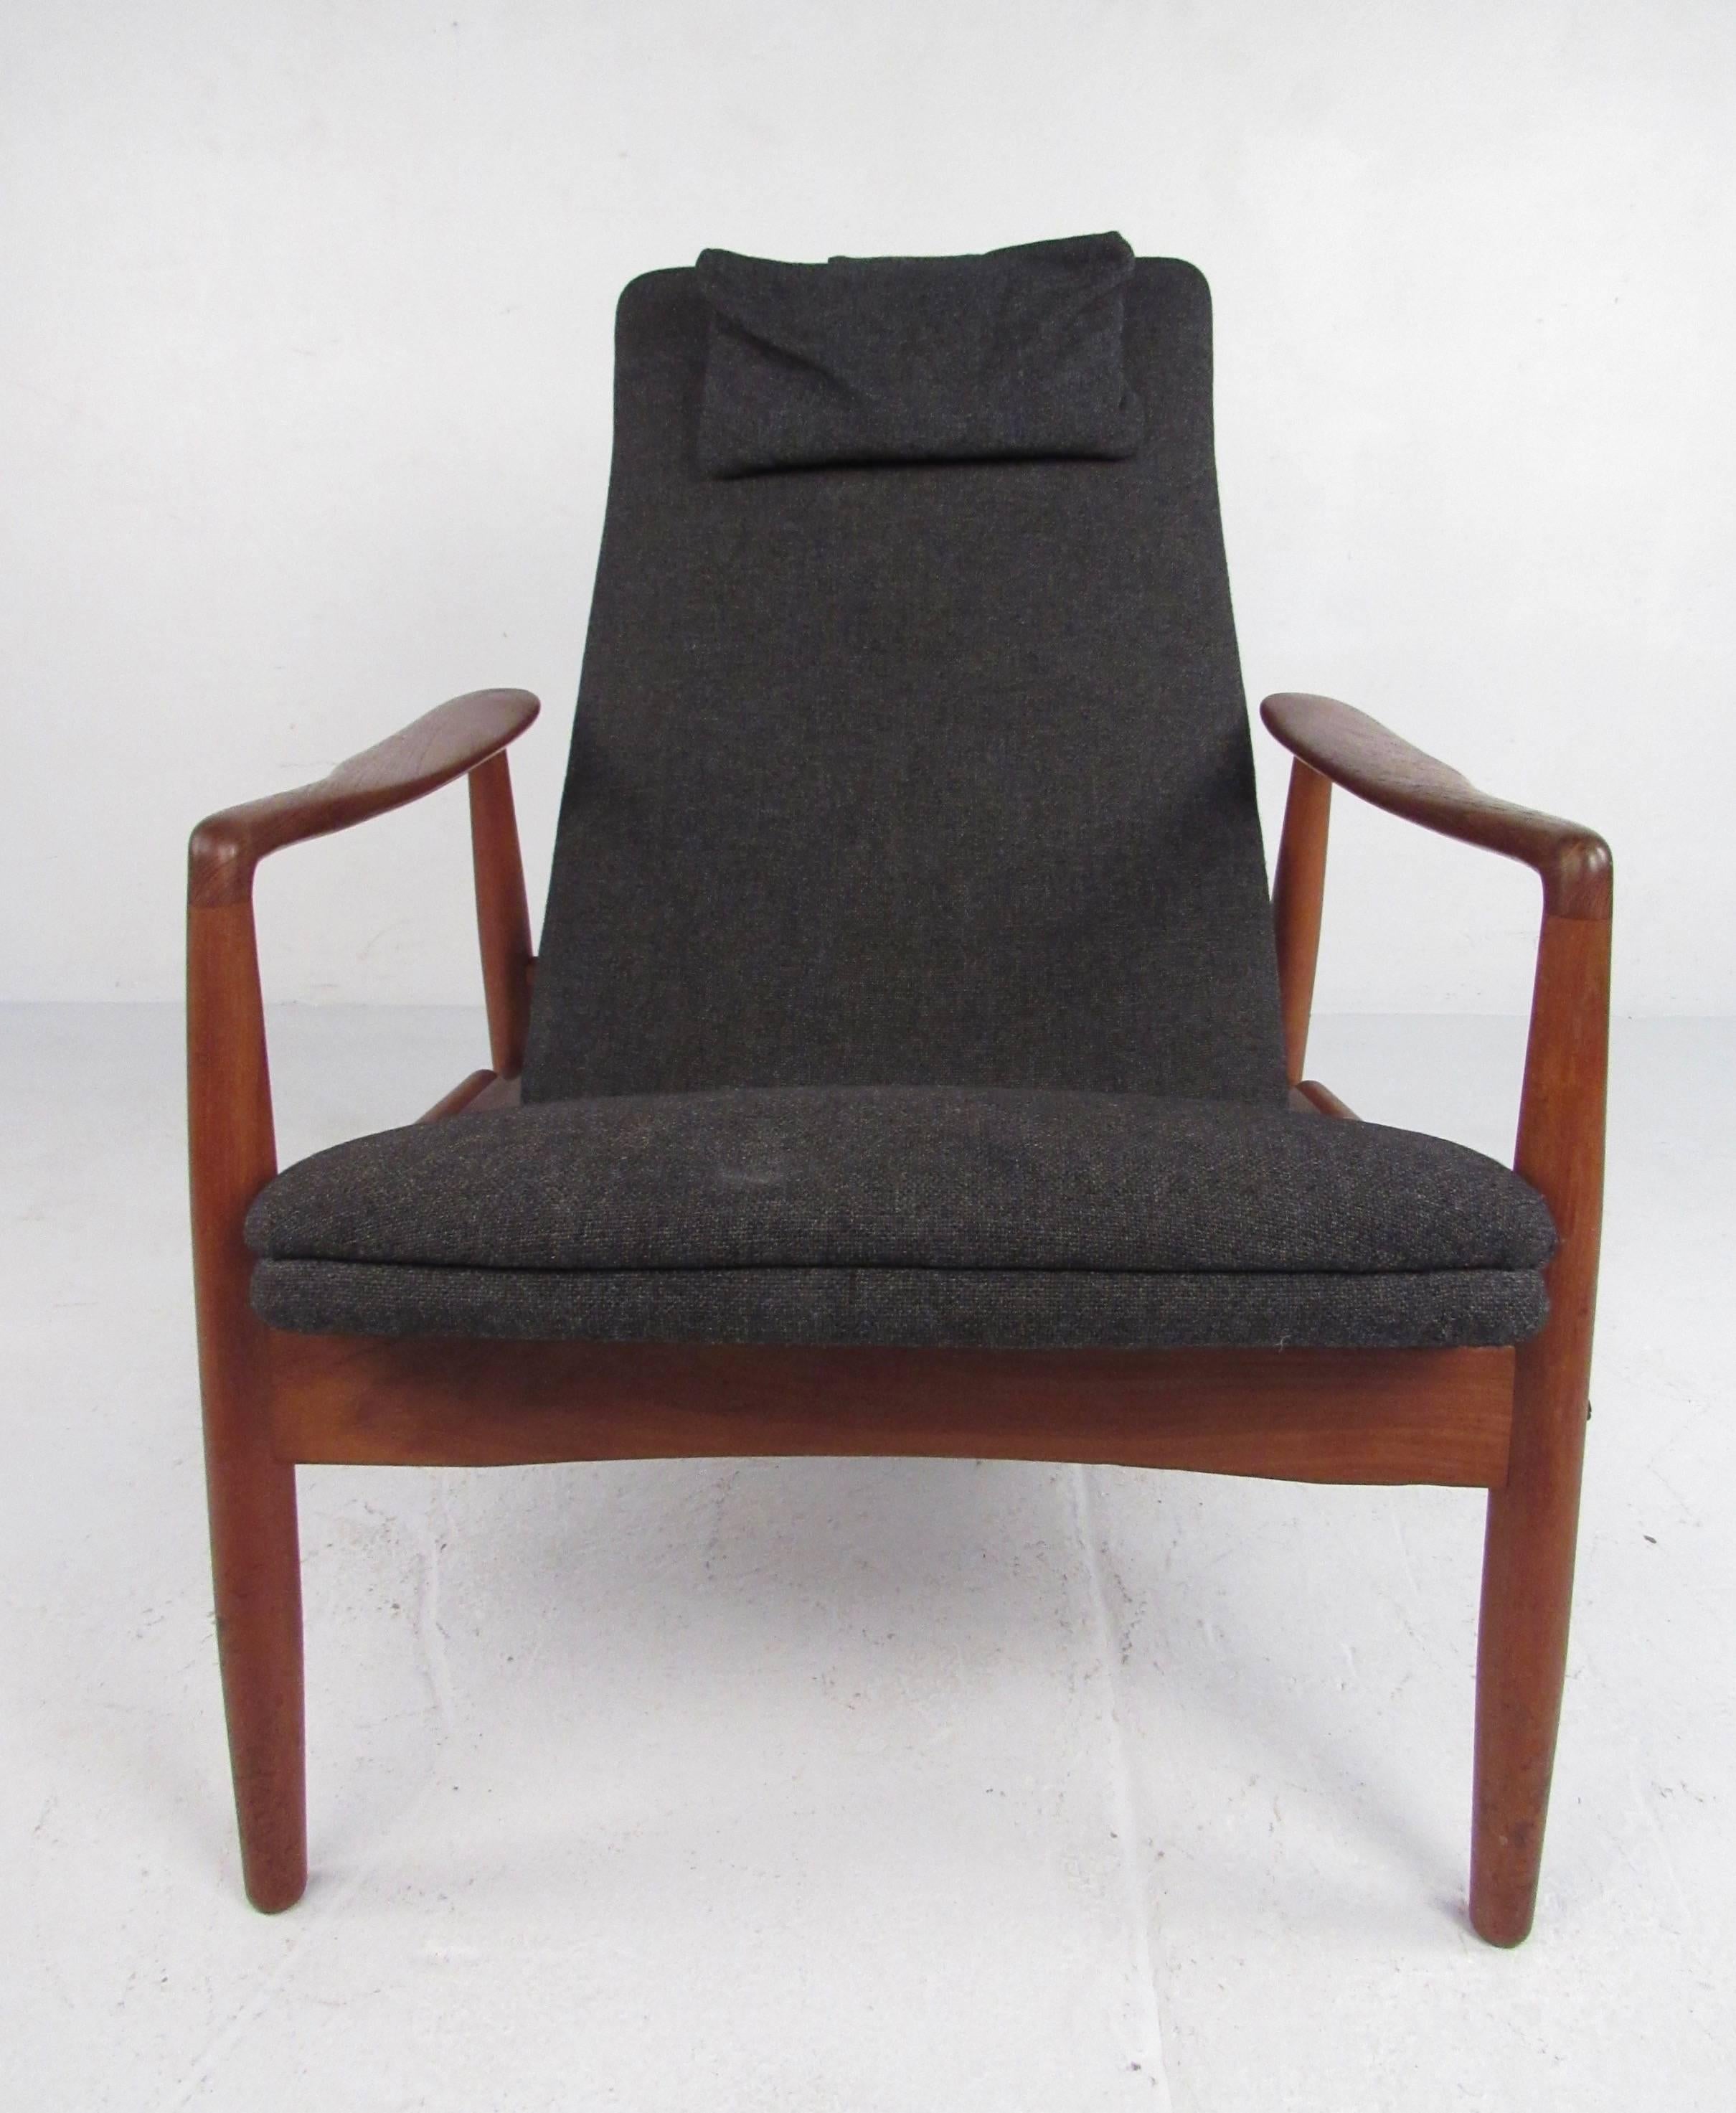 Dieser Vintage-Sessel mit Teakholzgestell zeigt skandinavisch-modernes Design von SL Mobler, um 1950, im Stil von Ib Kofod-Larsen. Die geschwungenen Armlehnen, die geschwungene hohe Rückenlehne und das bequeme Design tragen zum Mid-Century-Appeal